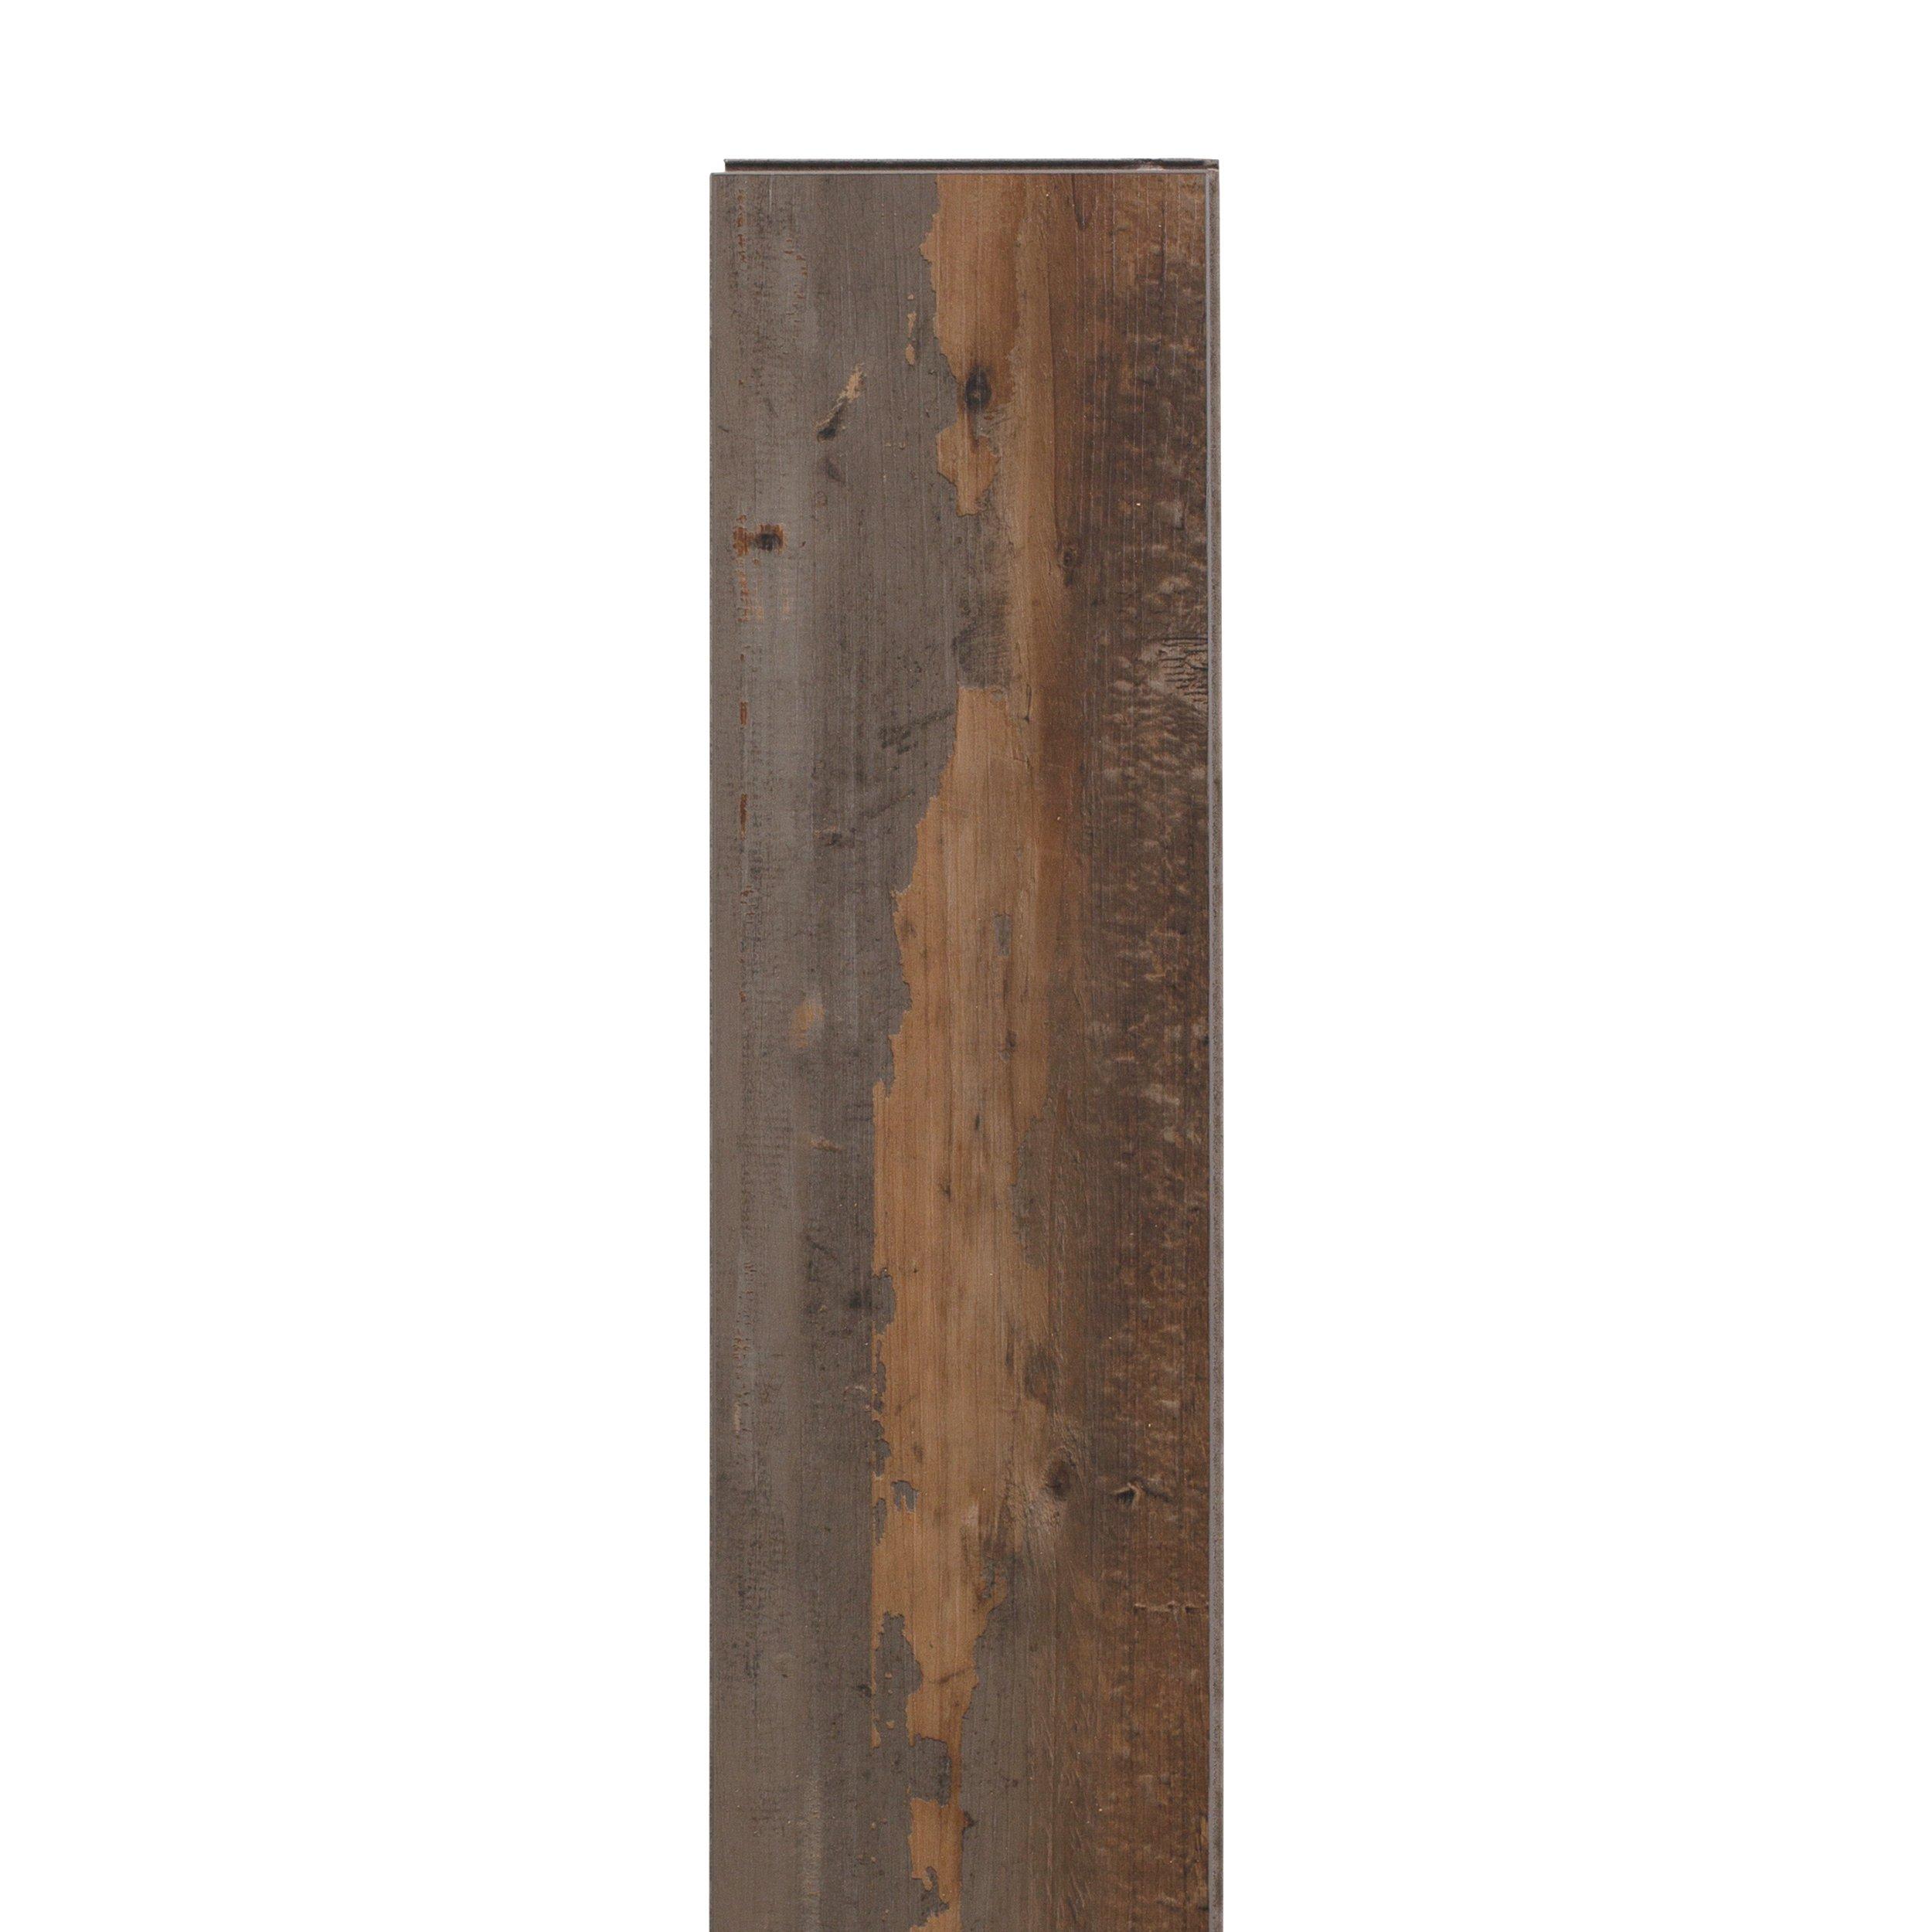 Old Barn Oak Rigid Core Luxury Vinyl Plank - Cork Back